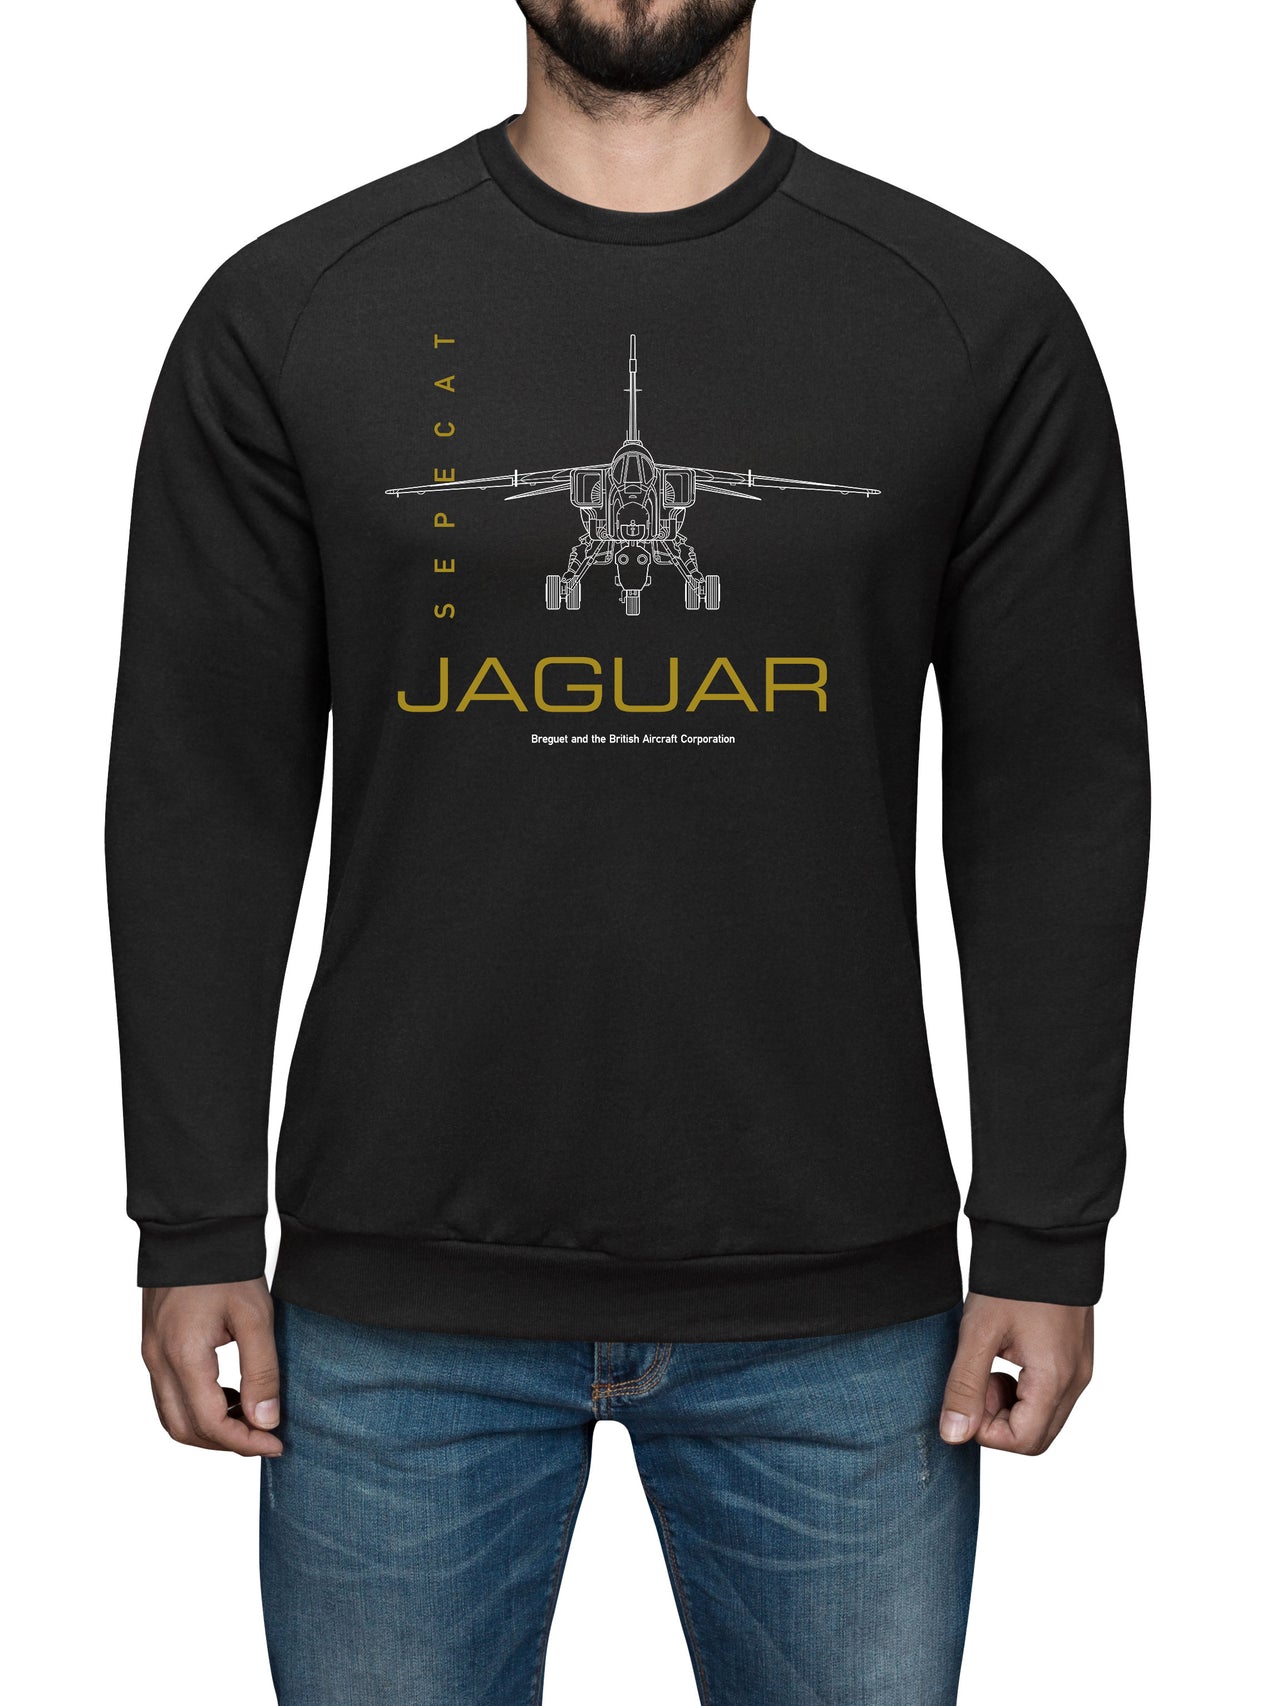 Jaguar - Sweat Shirt